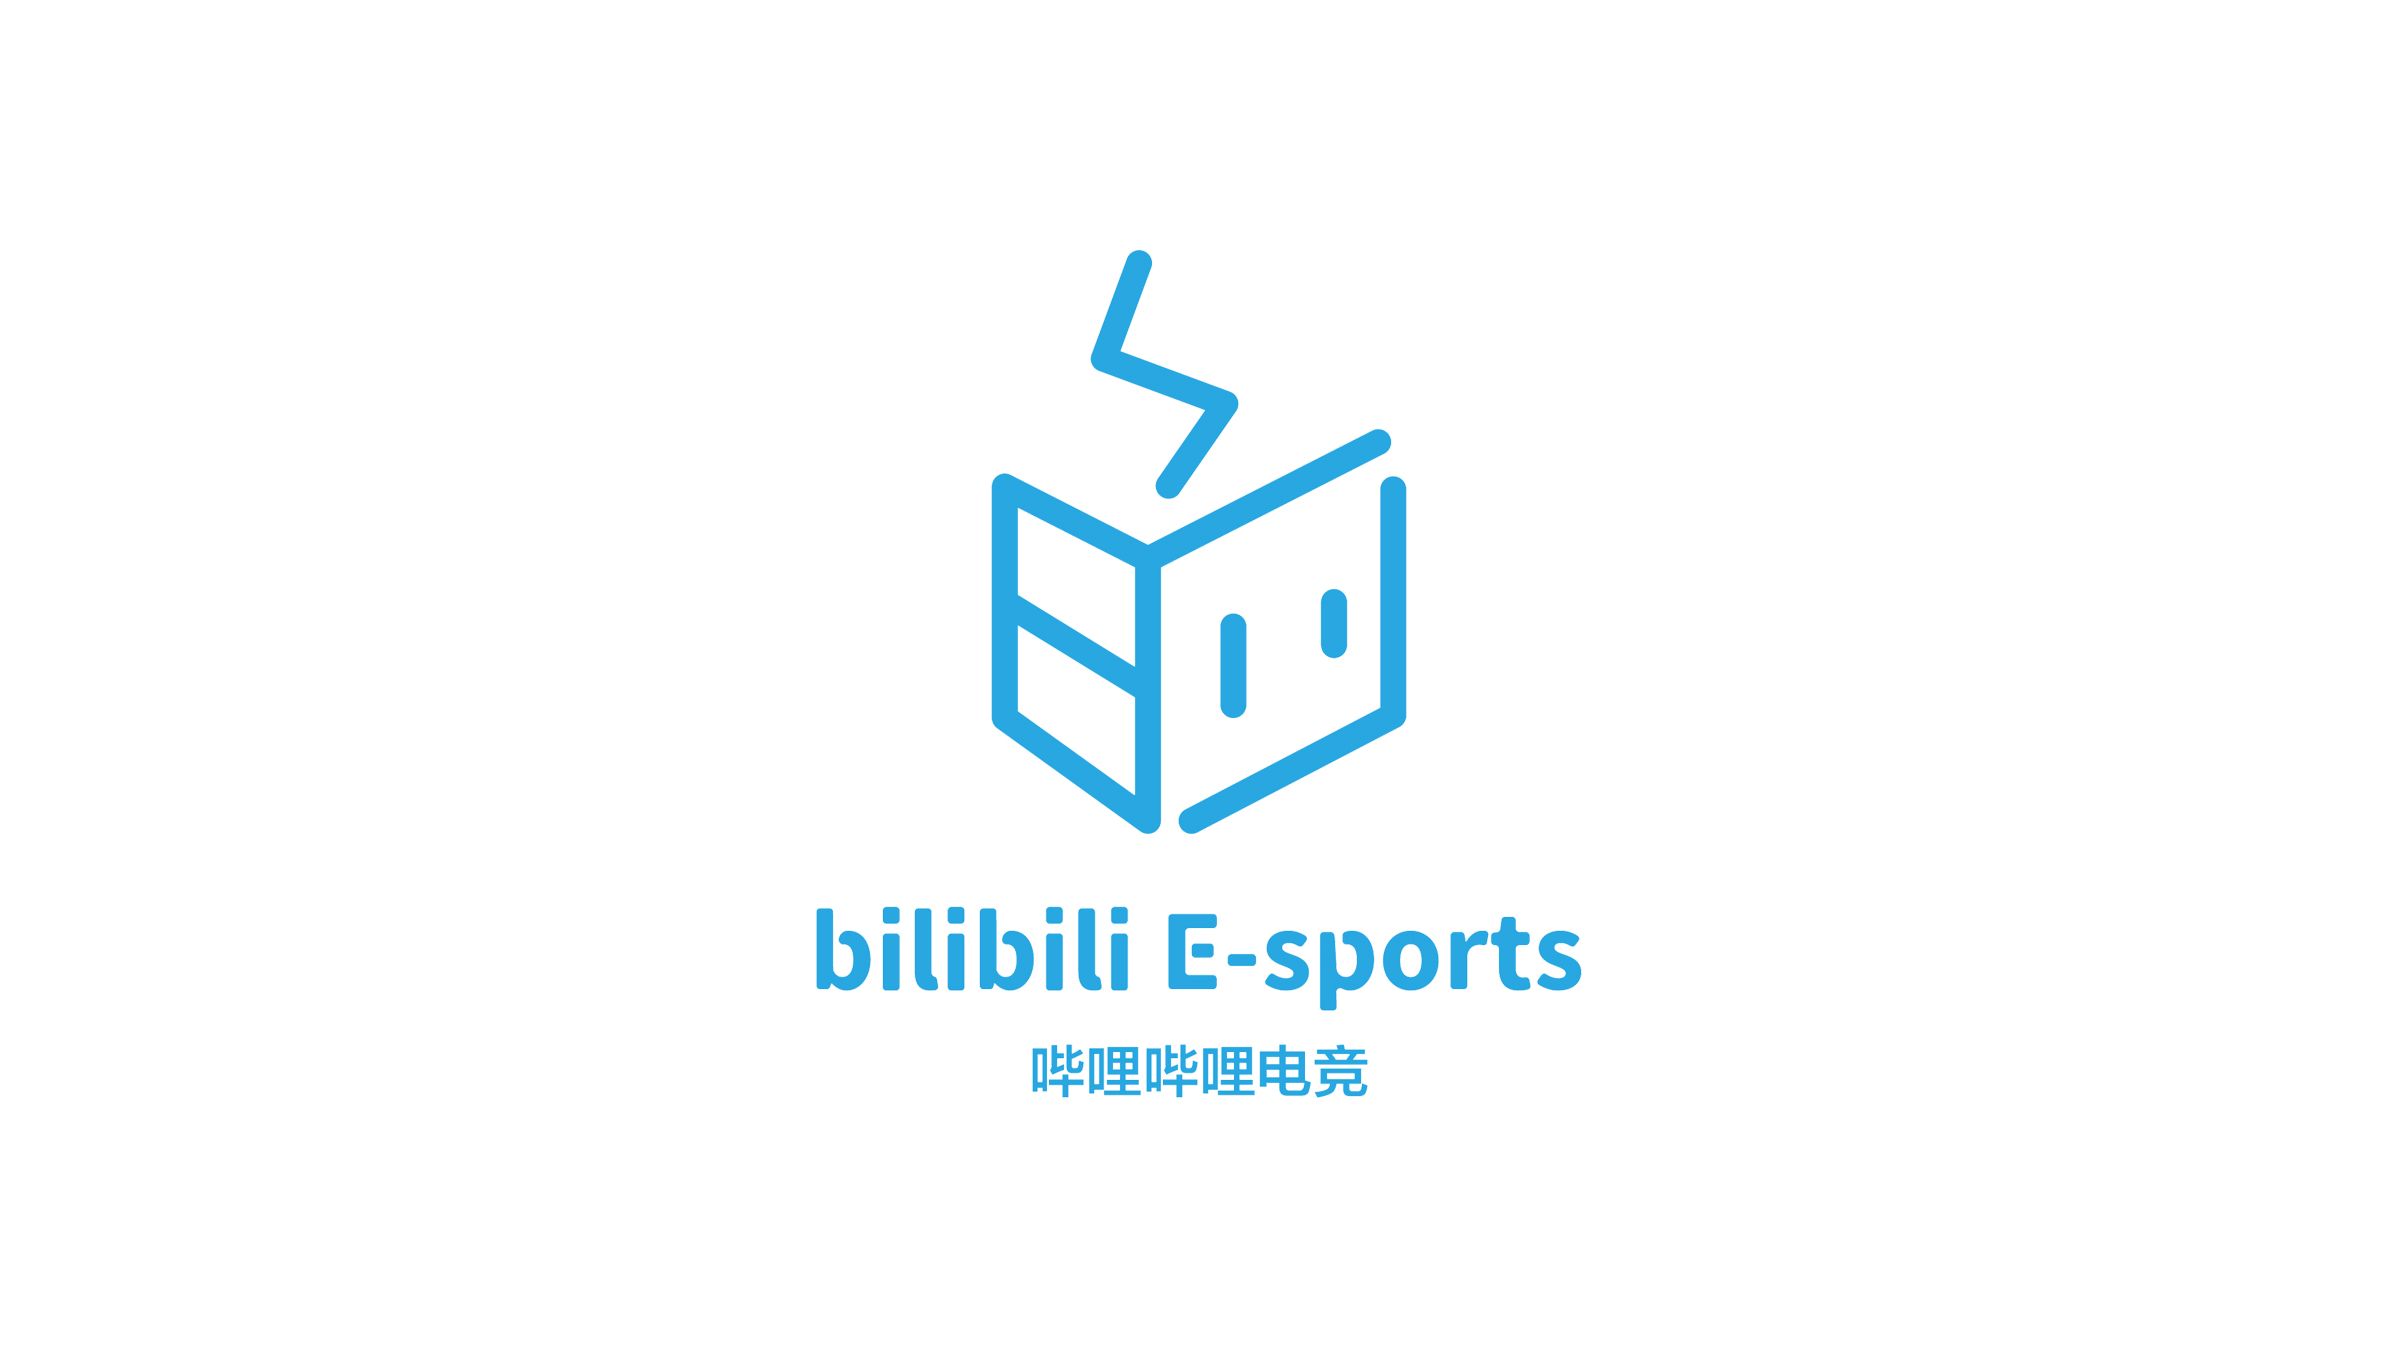 哔哩哔哩电竞公司logo.jpg